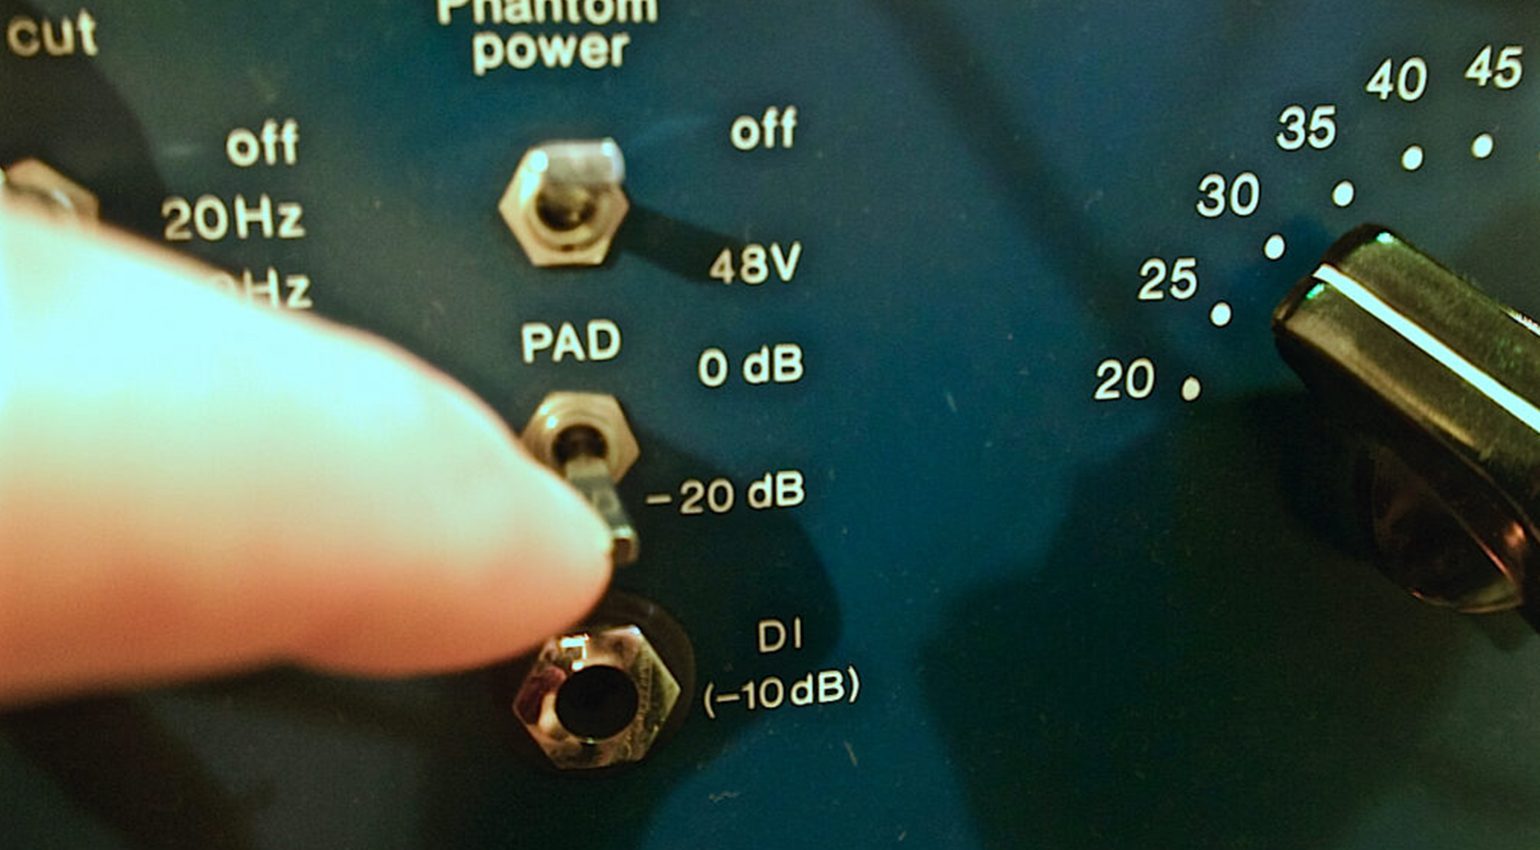 Questo preamplificatore dispone di un PAD per attenuare il segnale di -20 dB